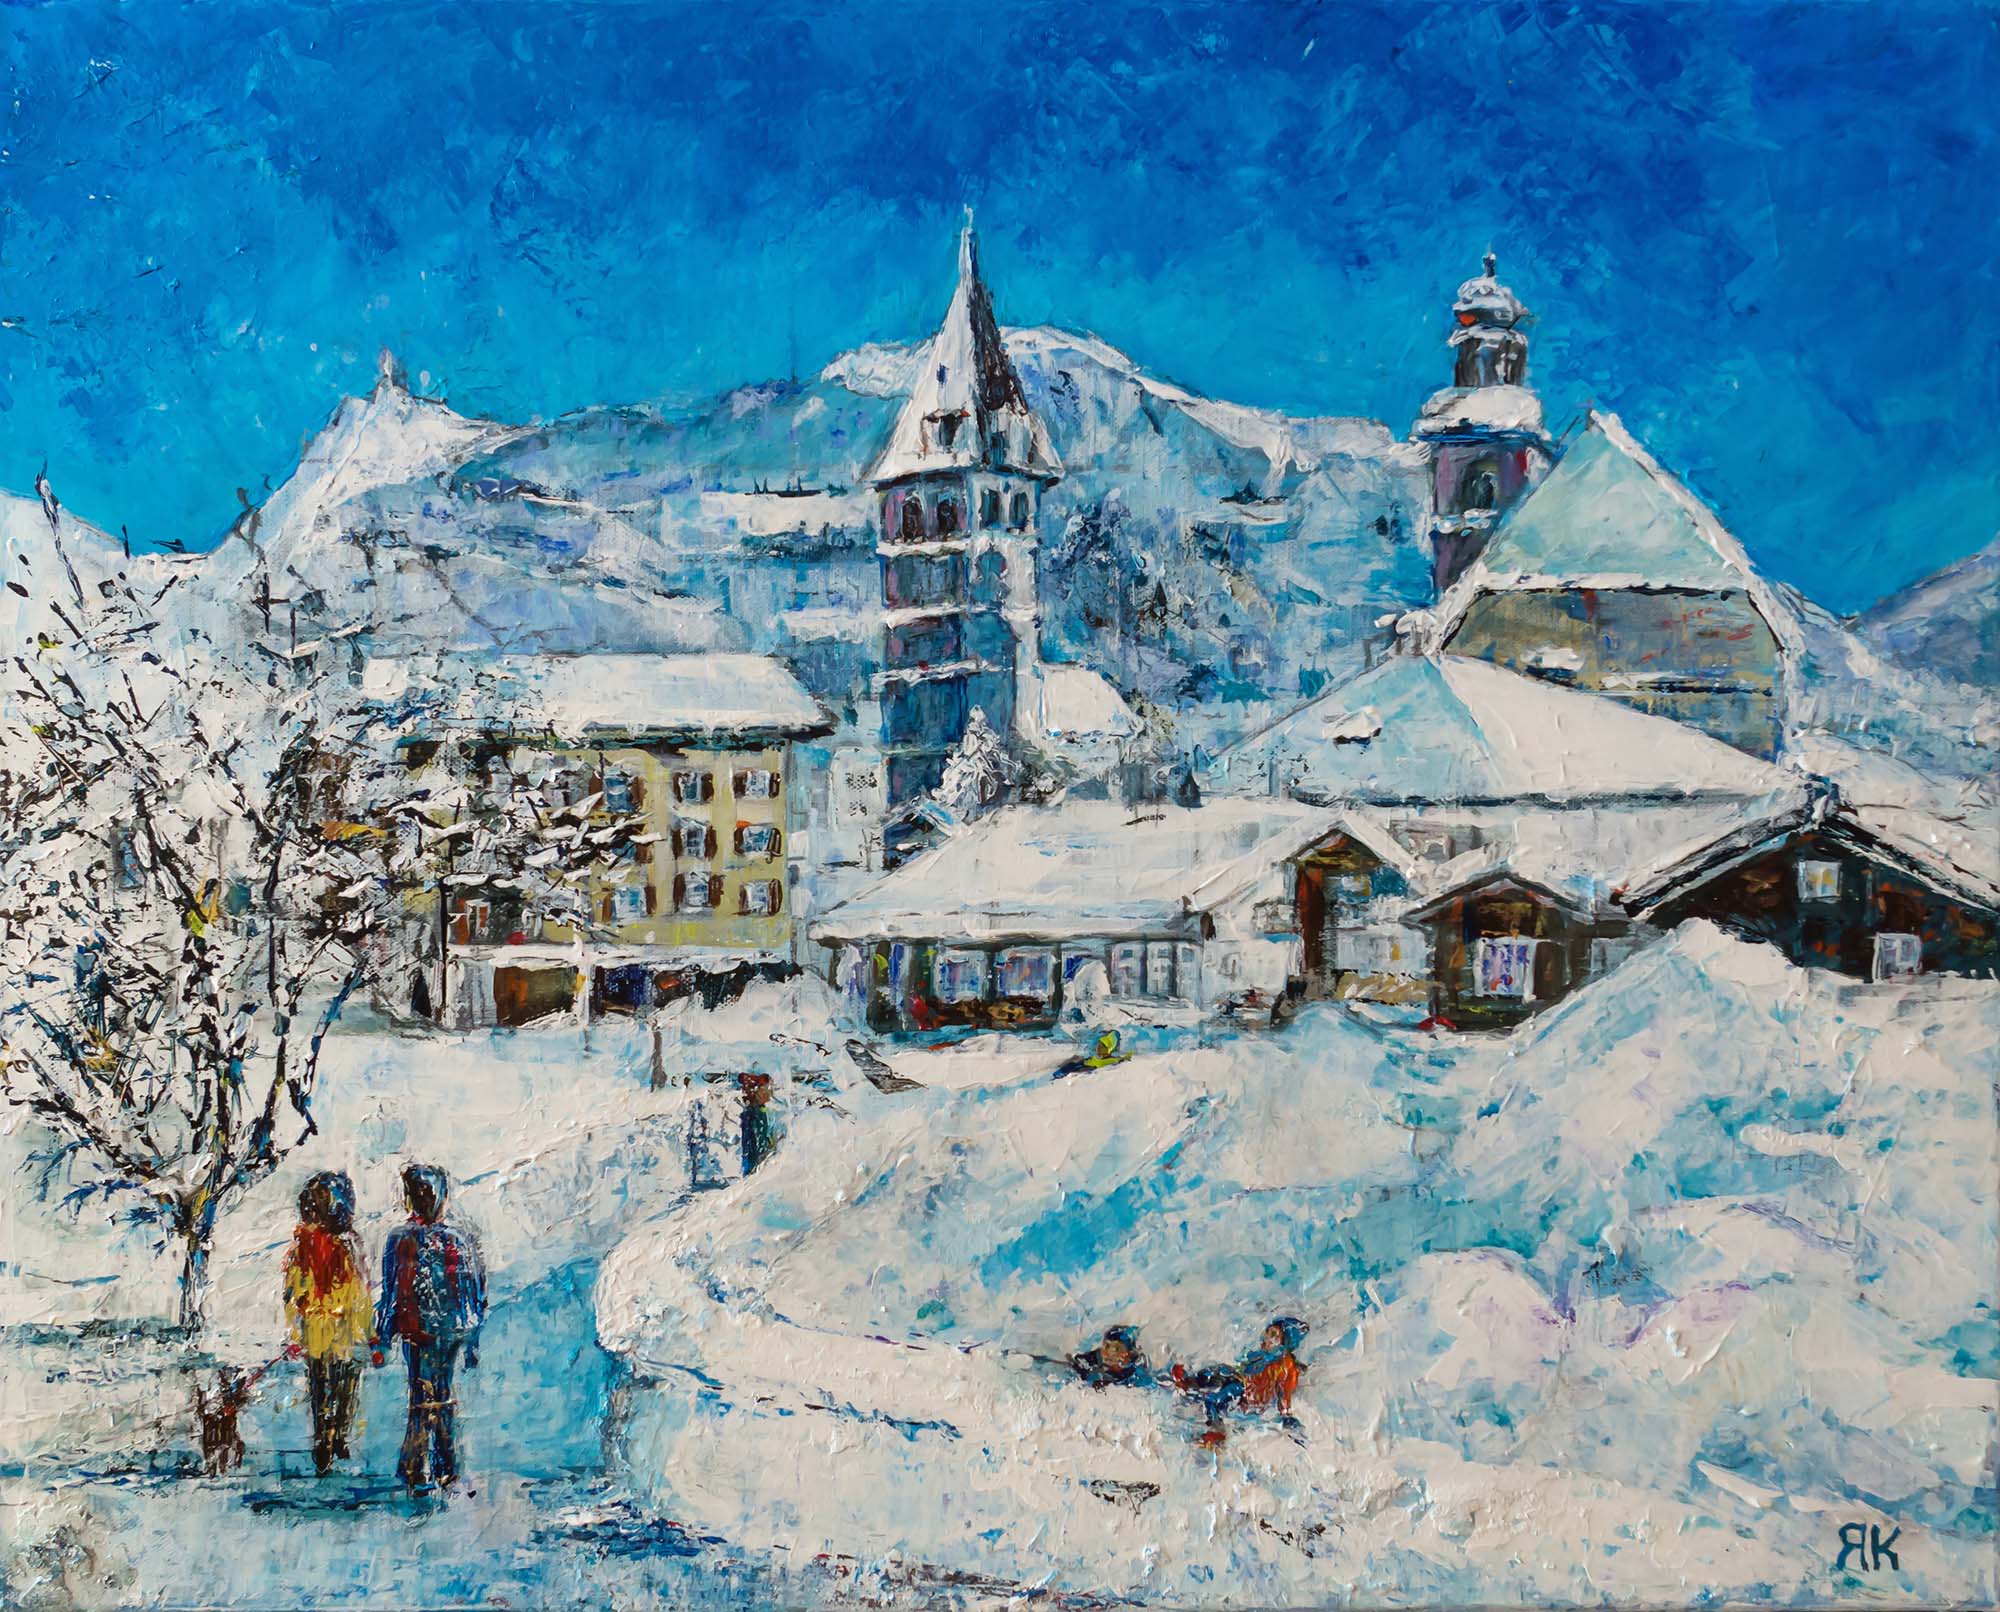 People walking in winter landscape in Kitzbühel, Tyrol, Austria by Ria Kieboom